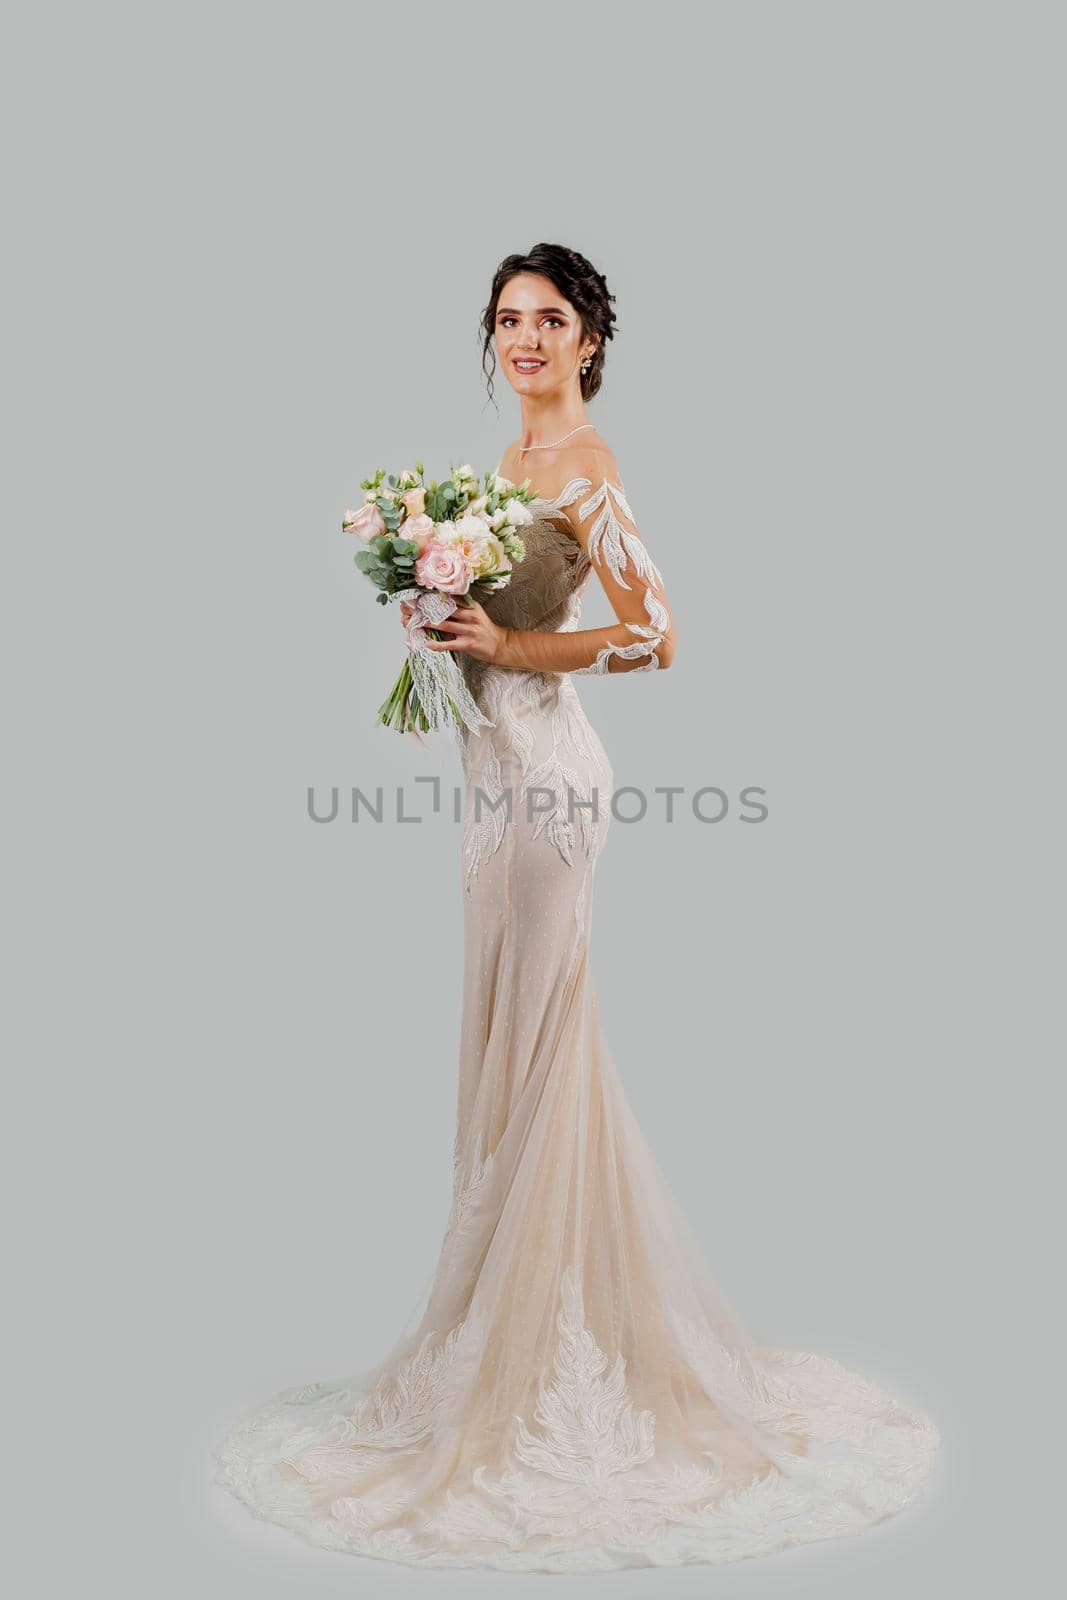 Girl in wedding dress on white blank background. Bride in white wedding dress with bouquet in studio